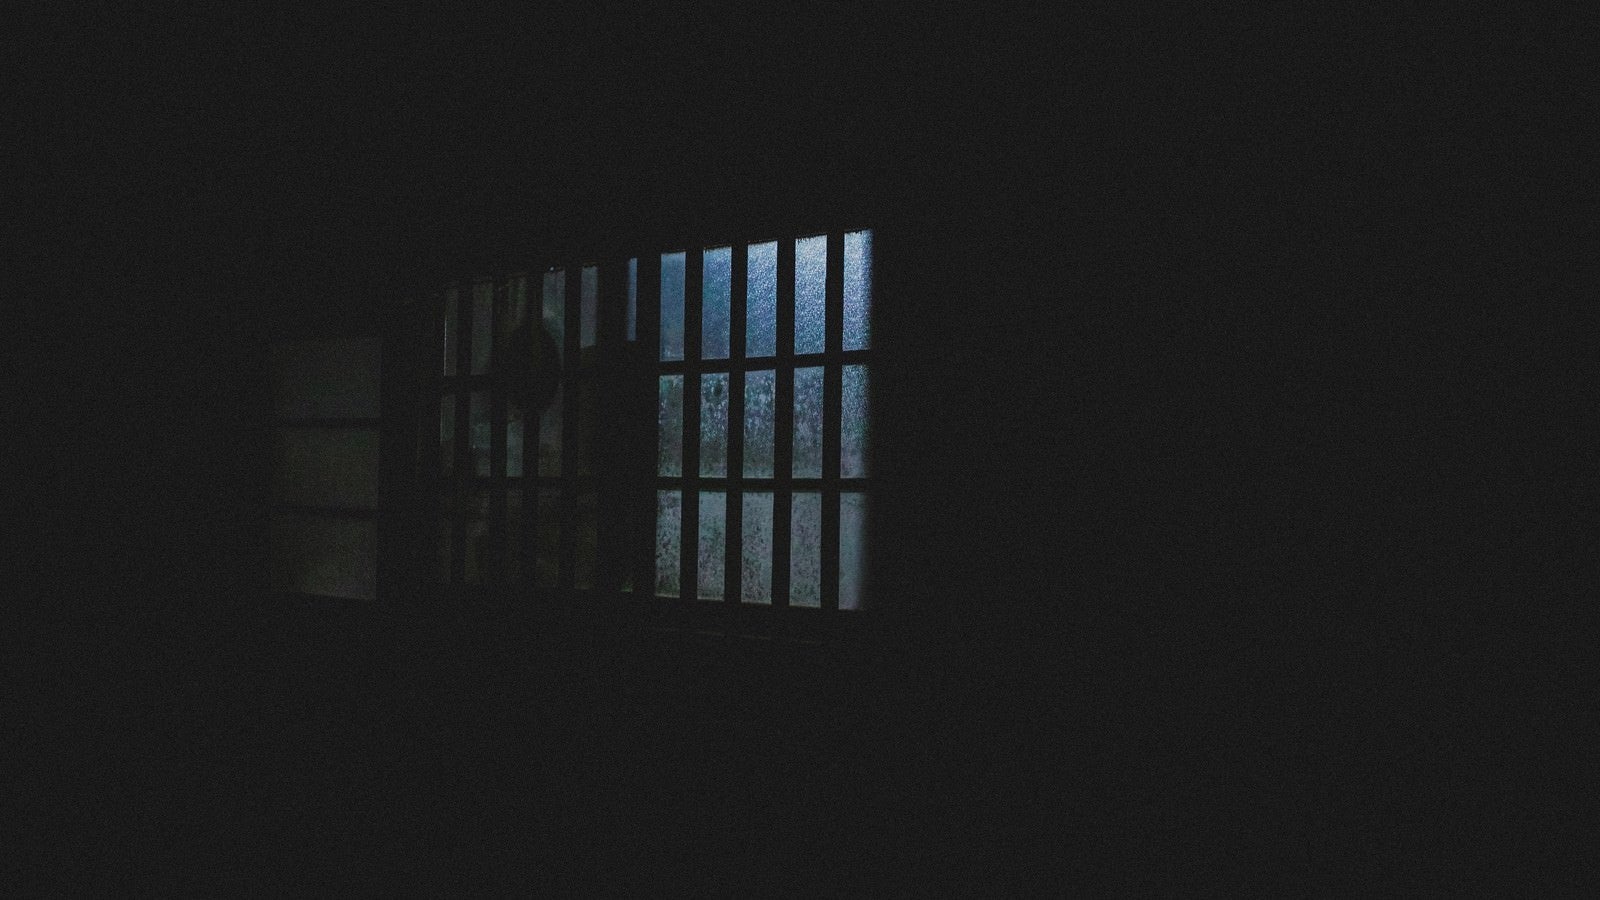 「深夜、眠らない隣人の窓明かり」の写真